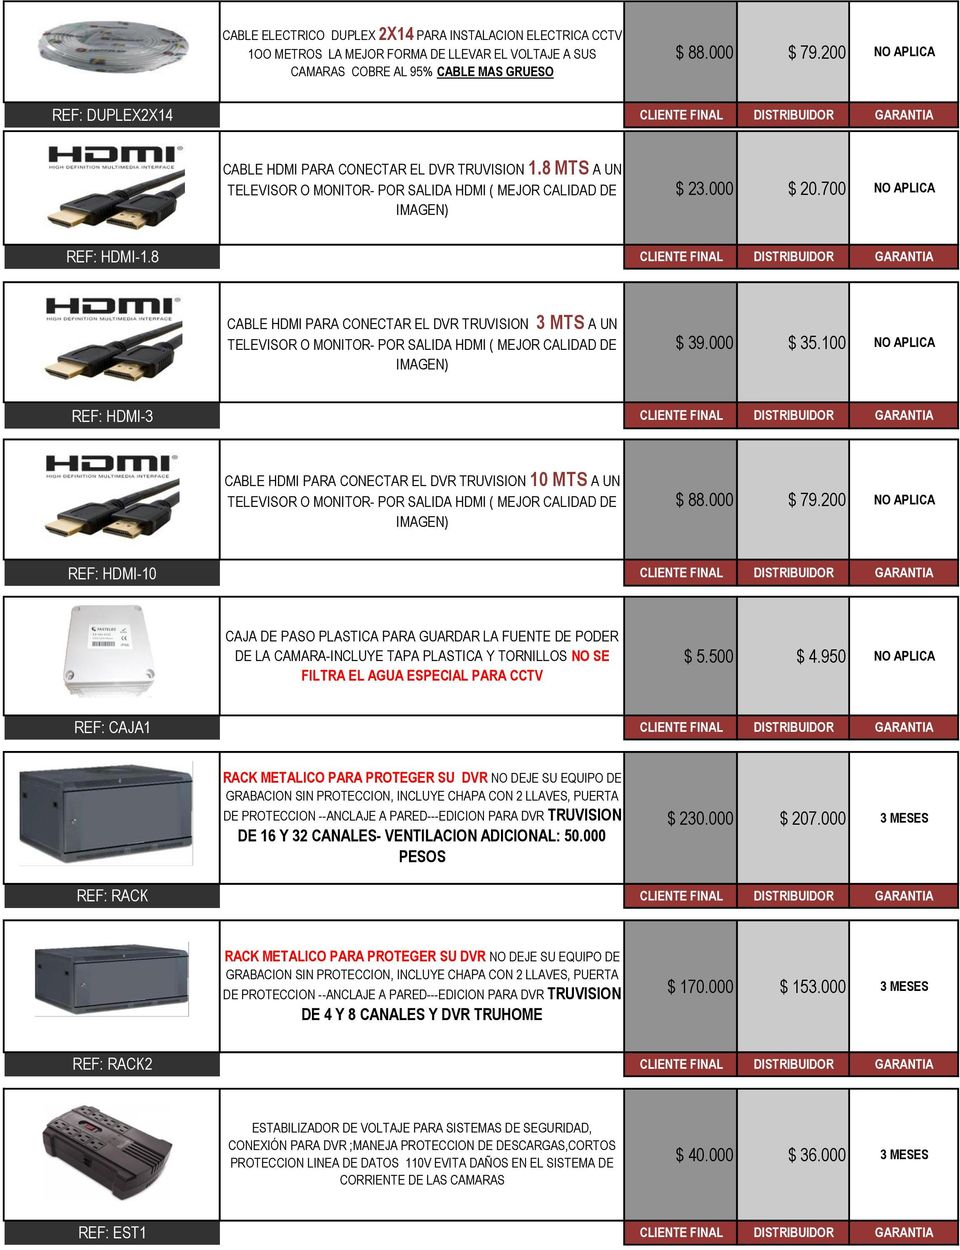 8 CABLE HDMI PARA CONECTAR EL DVR TRUVISION 3 MTS A UN TELEVISOR O MONITOR- POR SALIDA HDMI ( MEJOR CALIDAD DE IMAGEN) $ 39.000 $ 35.